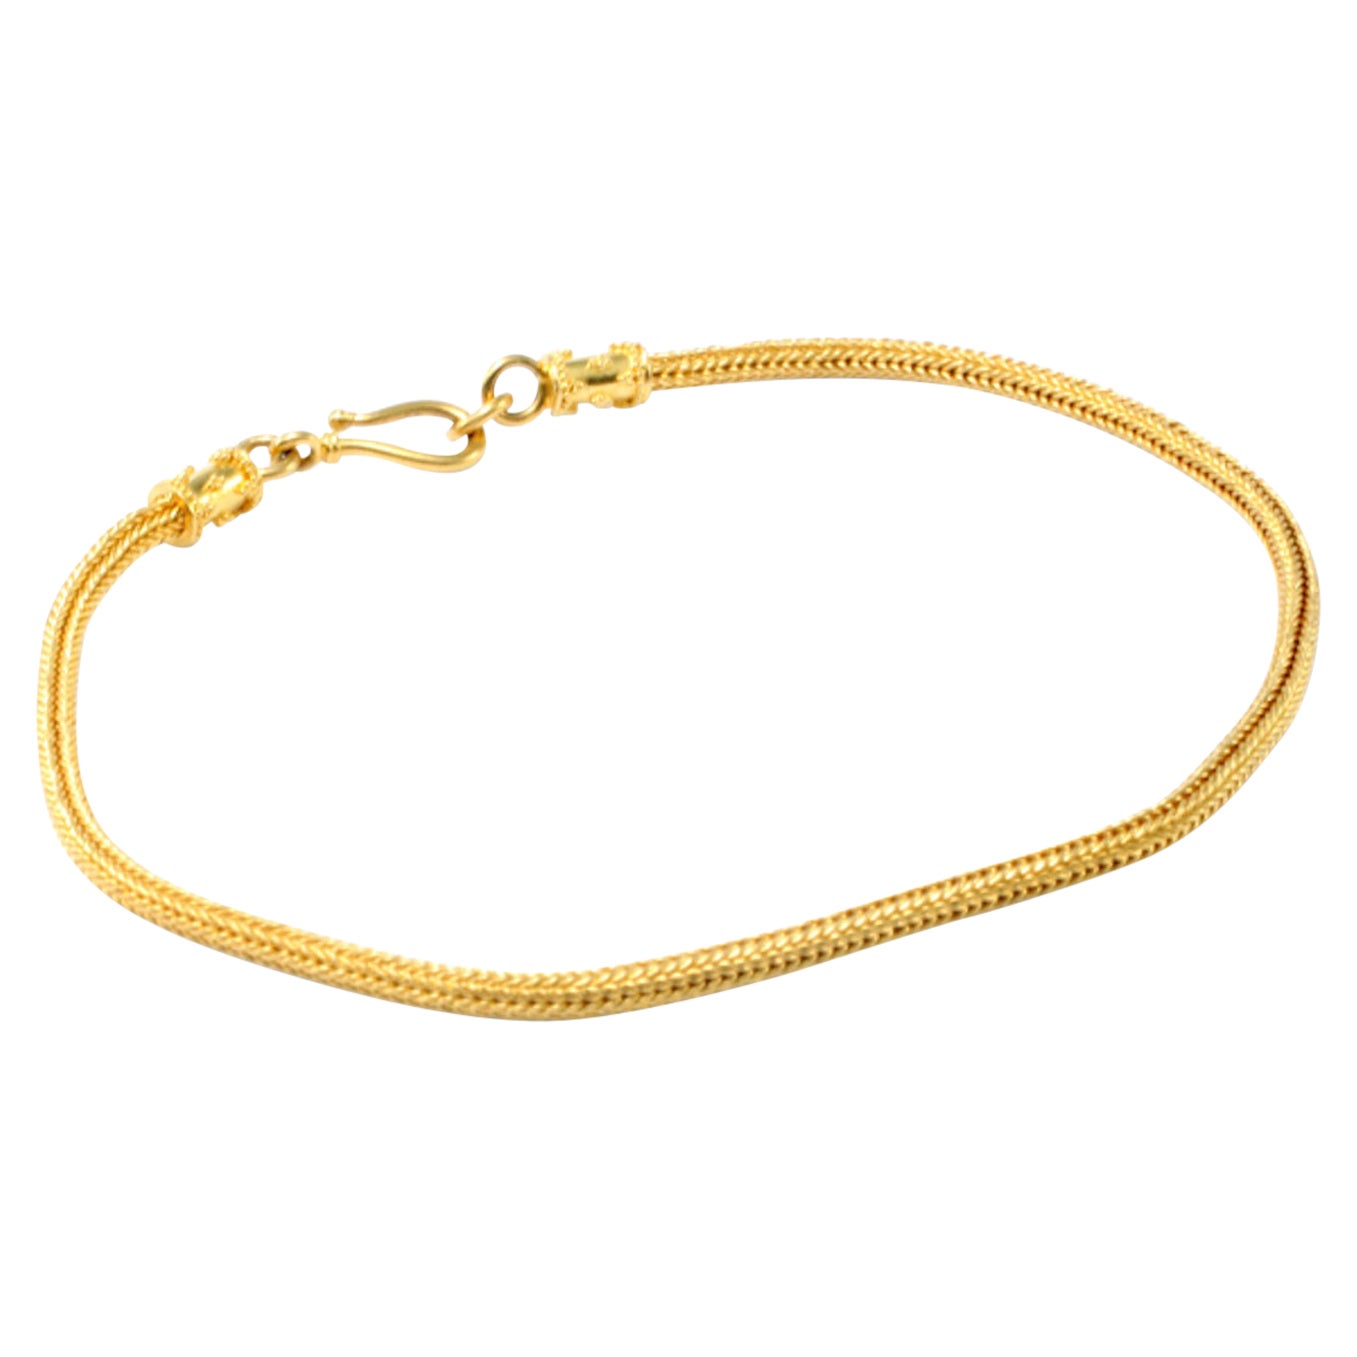 Steven Battelle Handwoven 22K Gold Bracelet